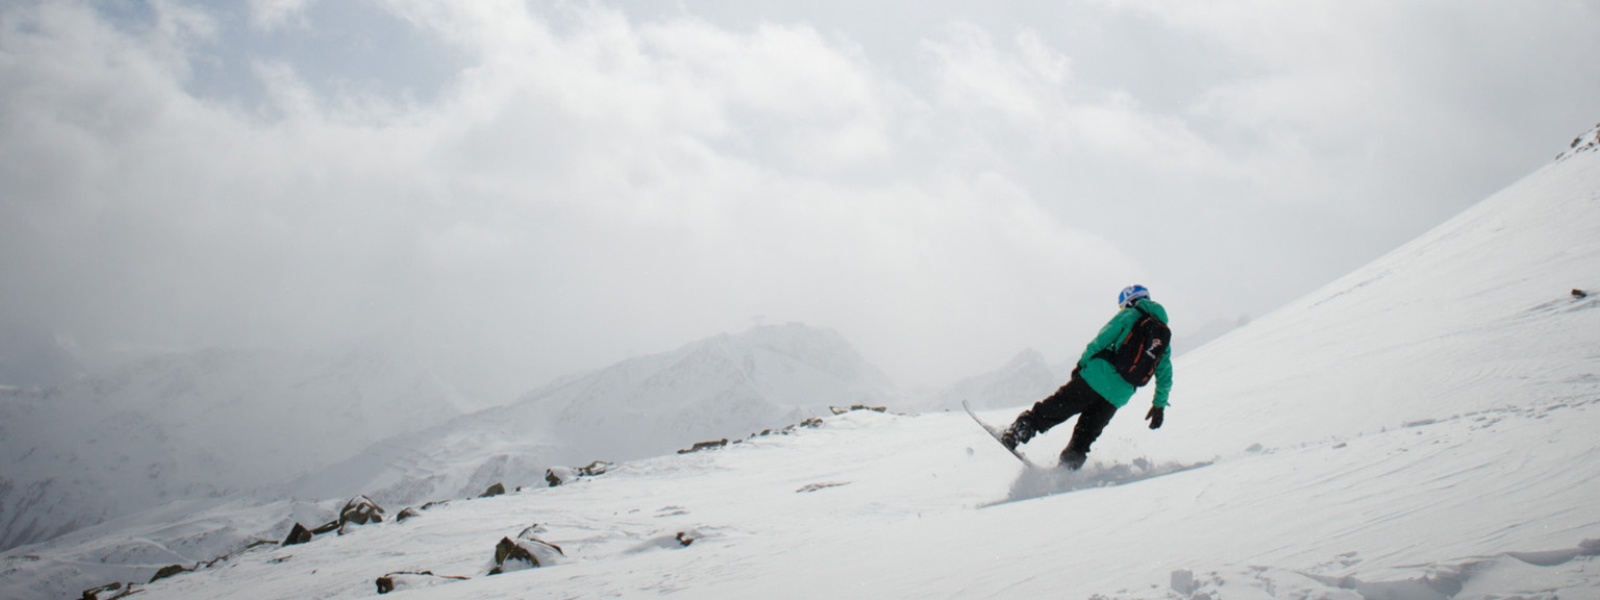 Snowboarder in grüner Jacke bremst mit dem hinteren Teil seines Boards vor einer Kuppe	 im Hintergrund sieht man verschneite Berggipfel durch die Wolken